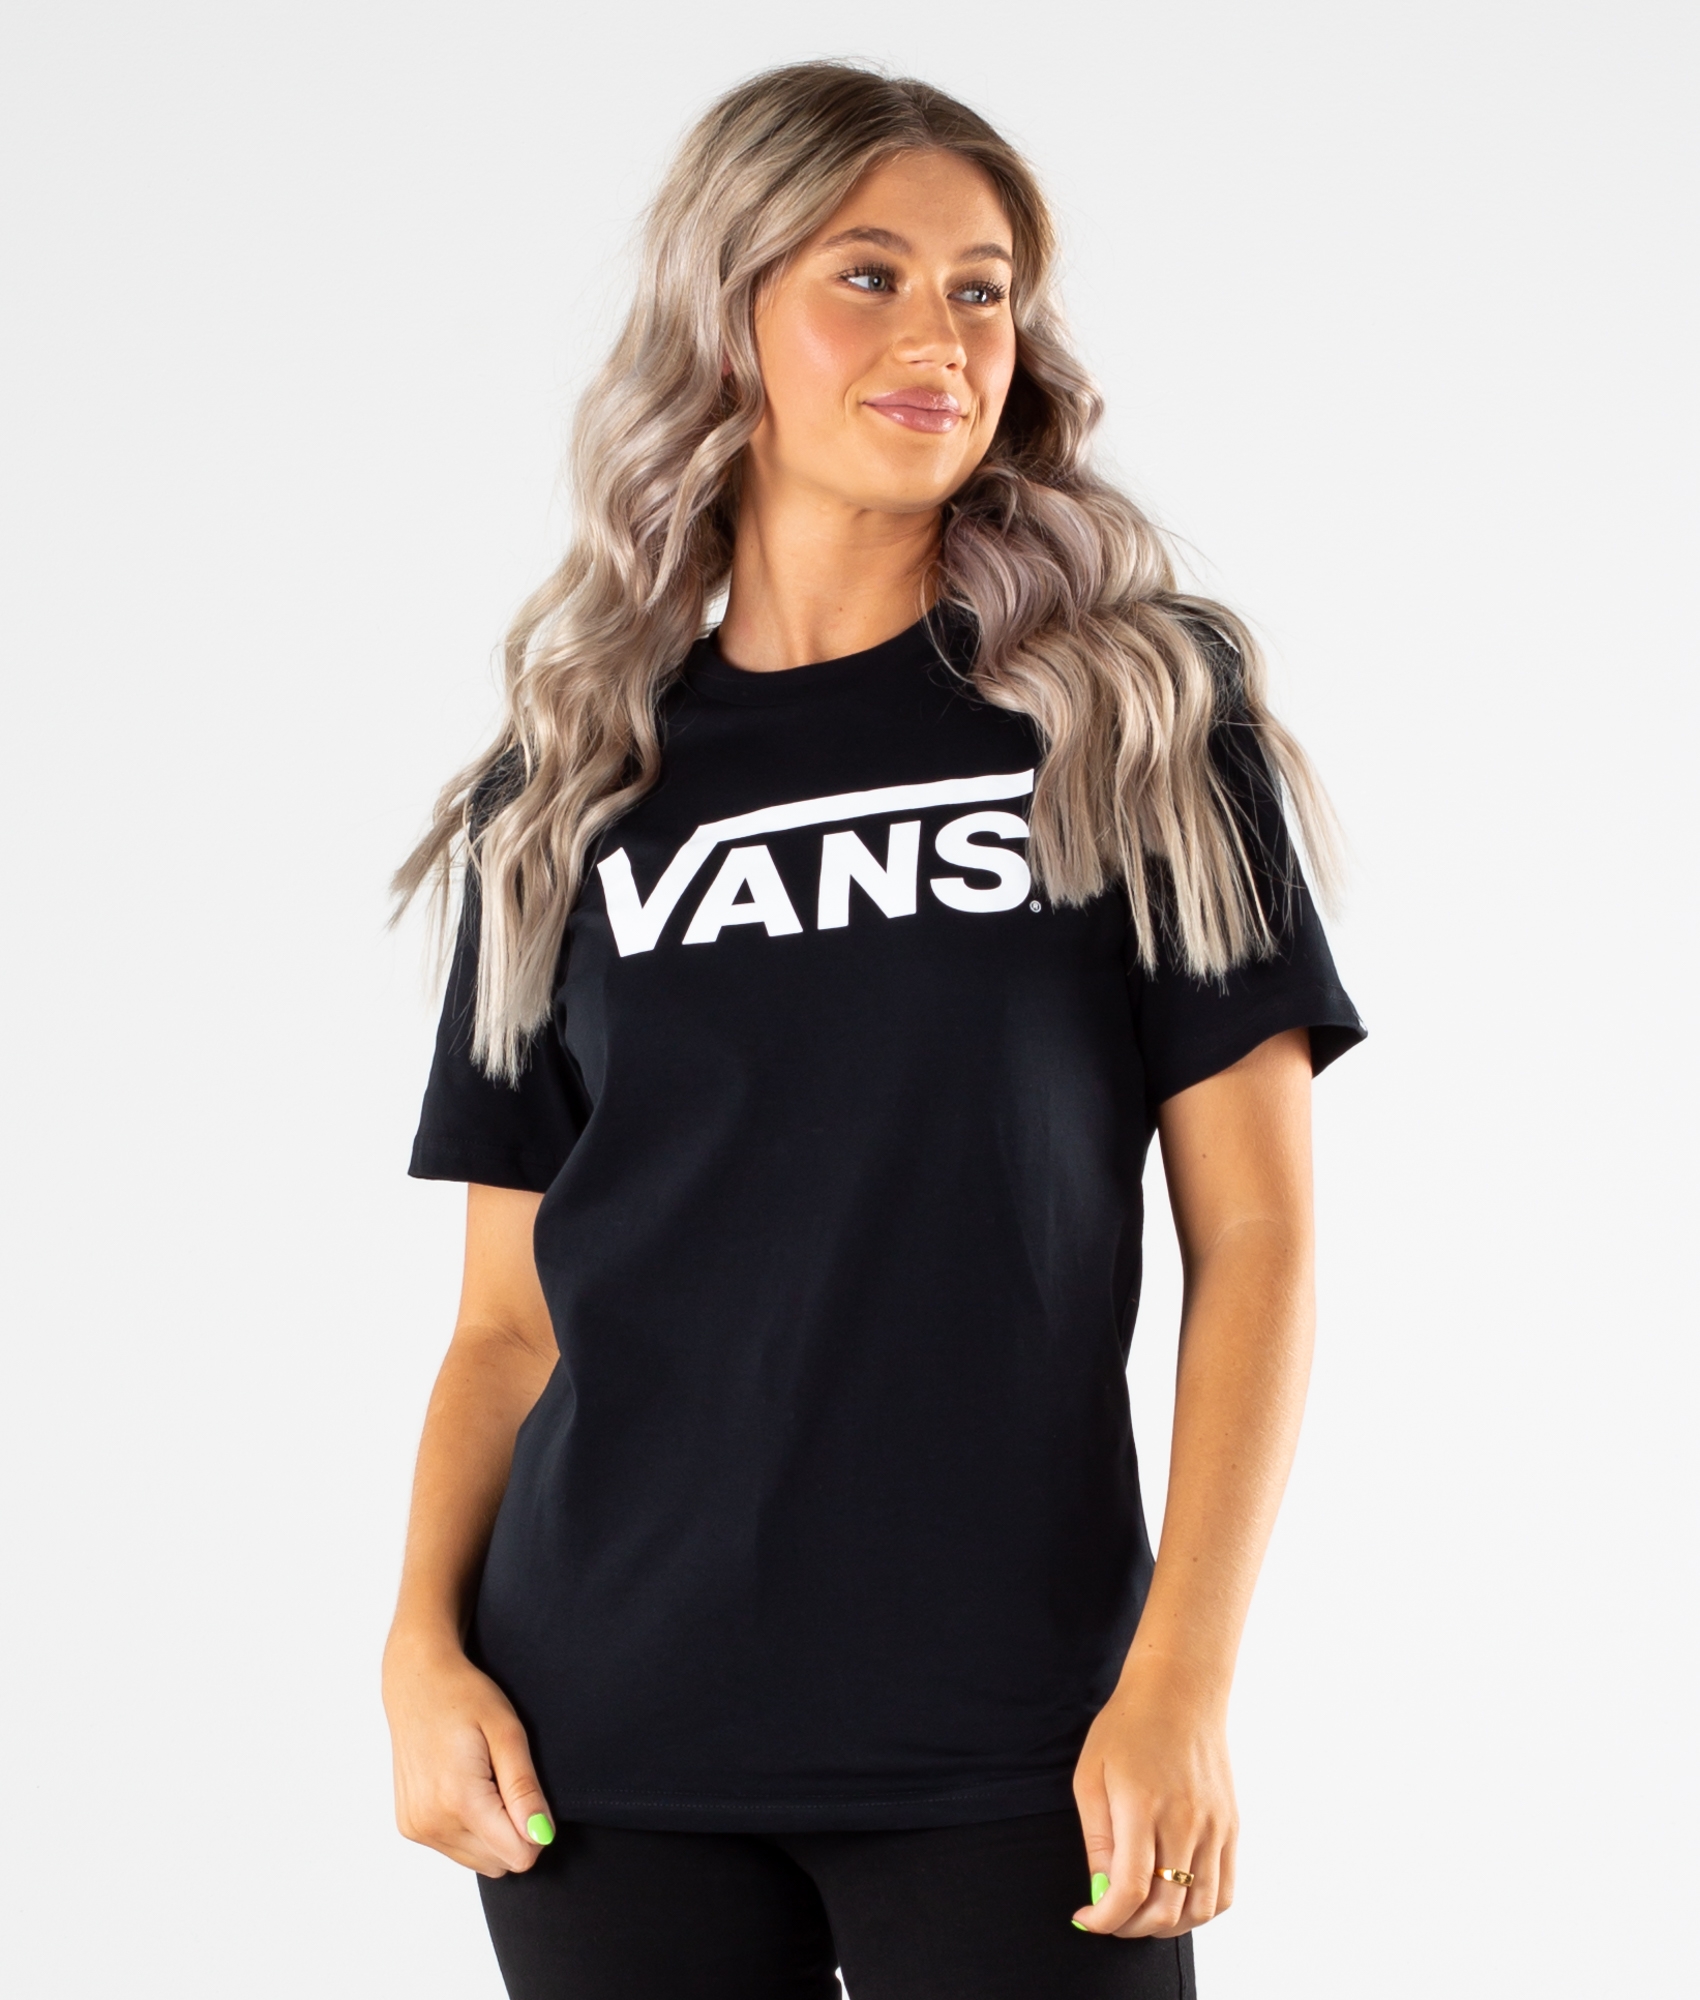 black and white vans shirt womens